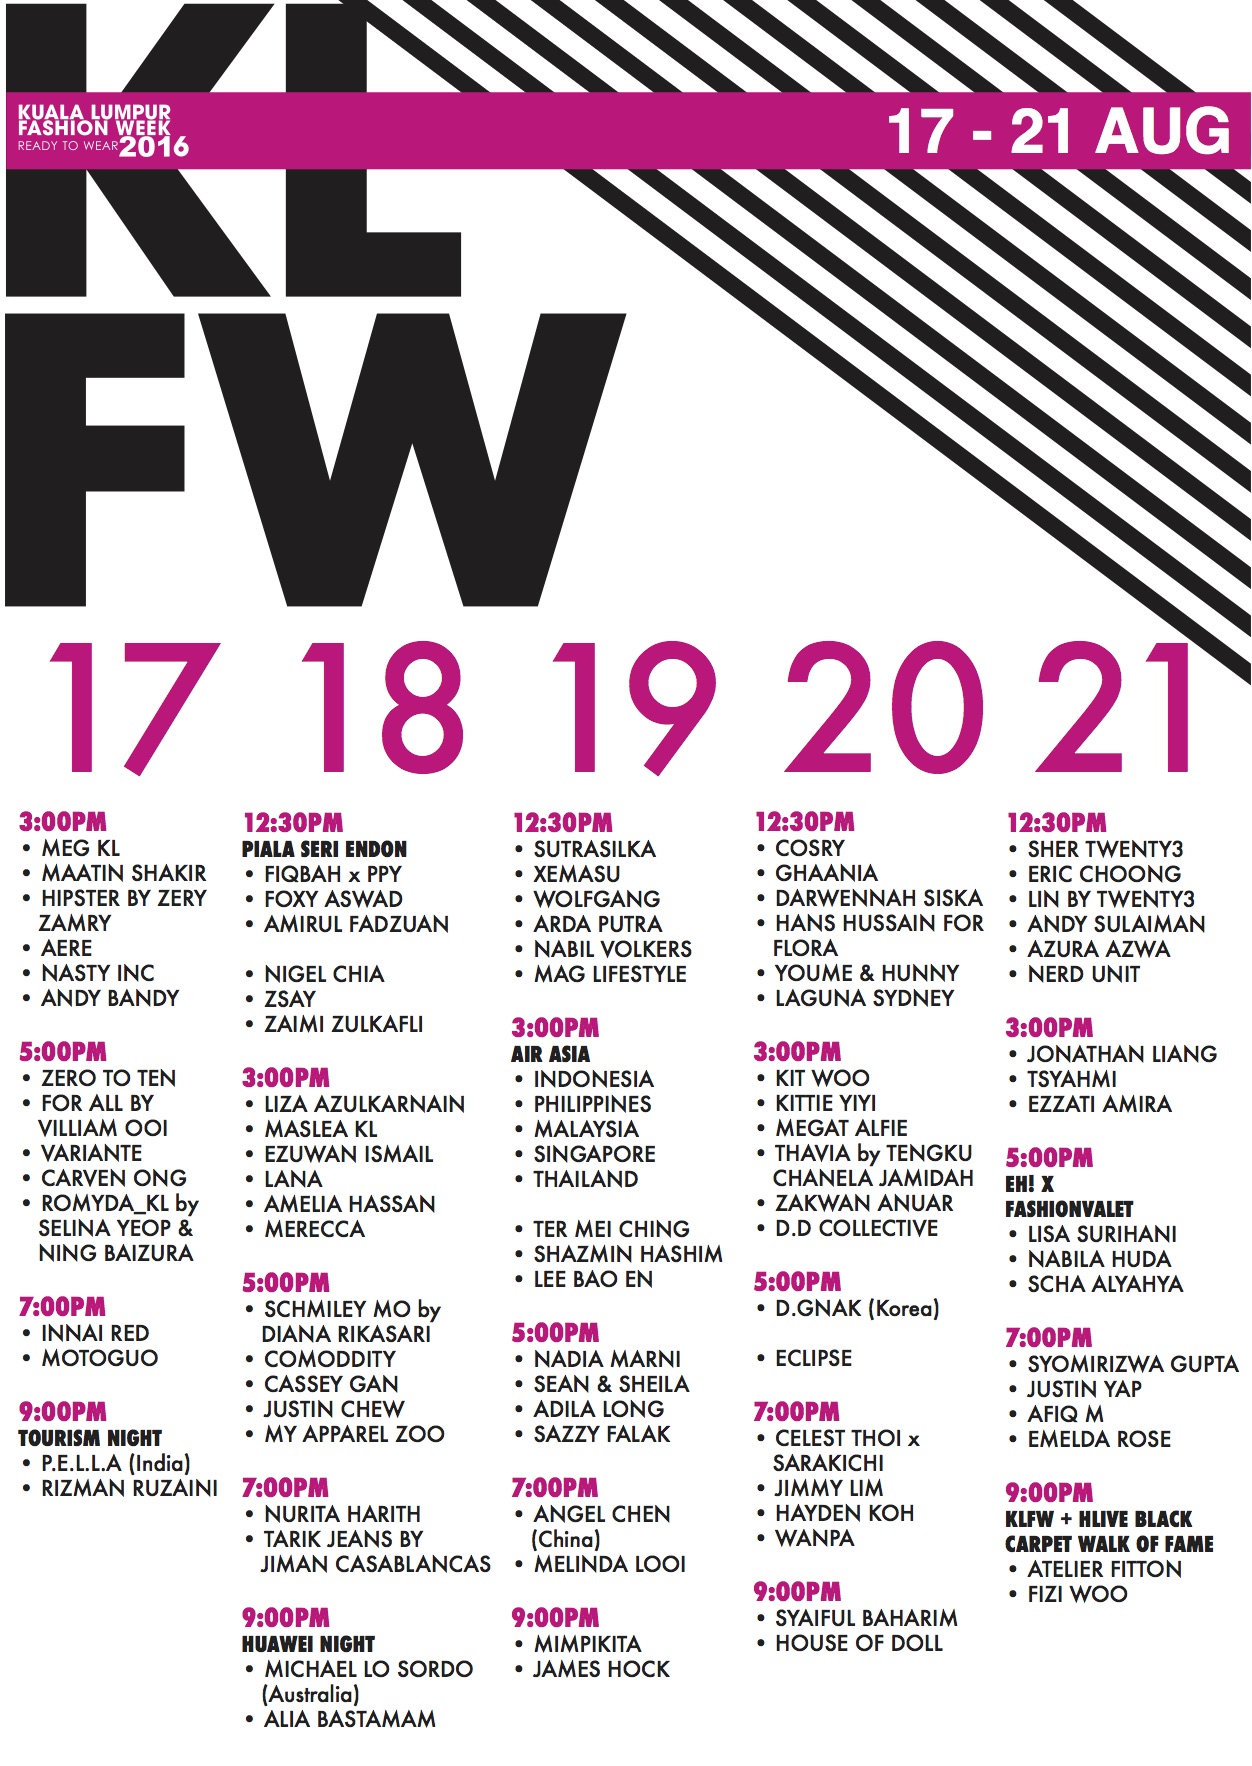 KLFW RTW 2016 - Official Calendar